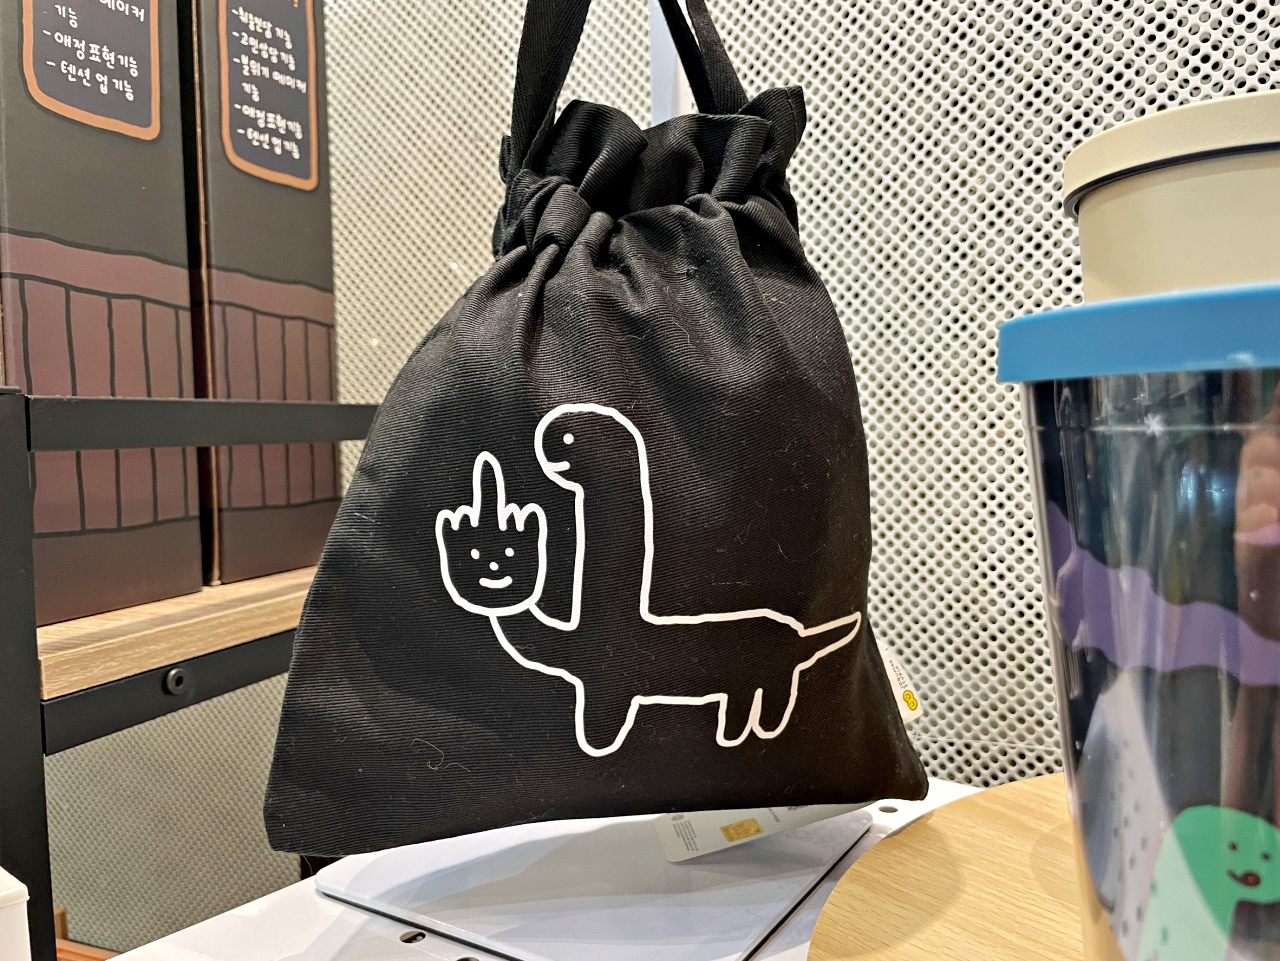 韓國文創JOGUMAN快閃台中，店內販售超多款JOGUMAN，消費滿千還送超可愛購物袋